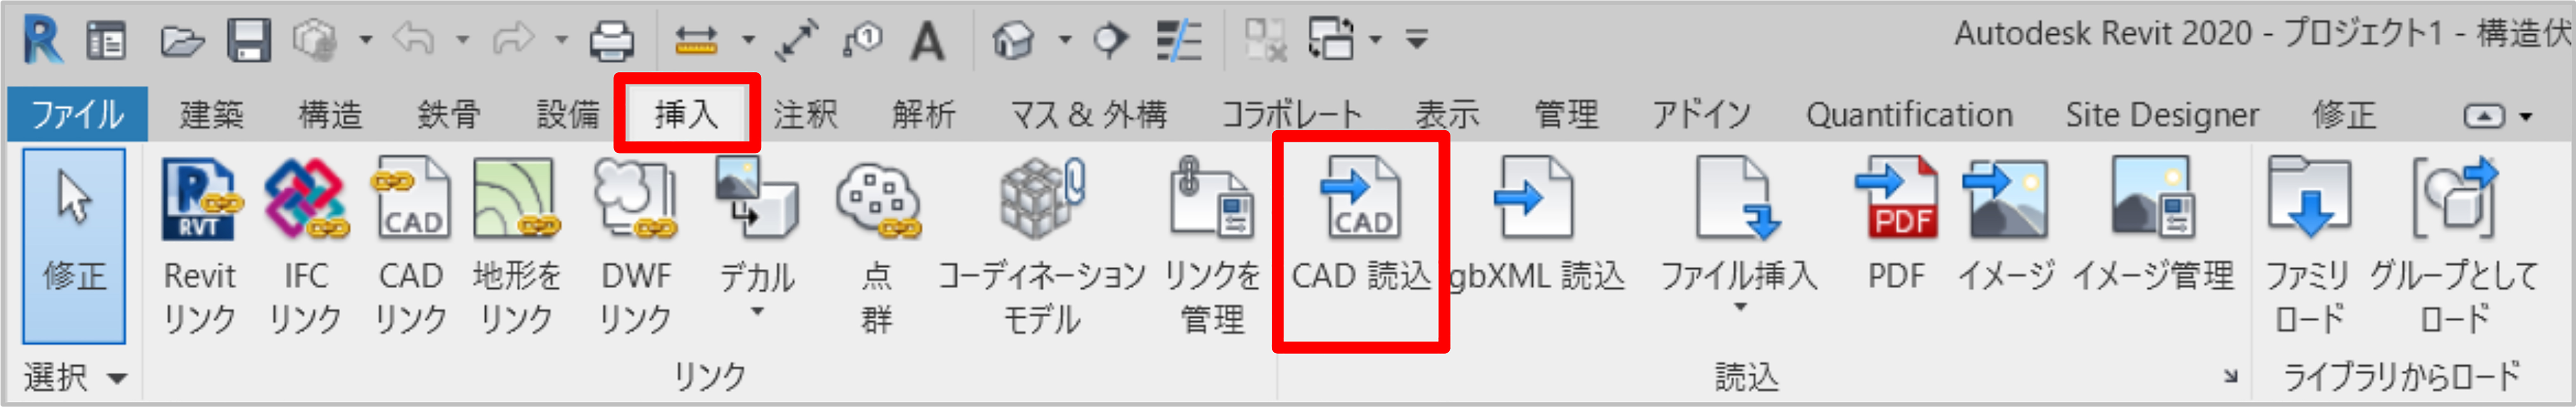 [挿入]タブ‐[読込]パネル‐[CAD 読込]を選択します。